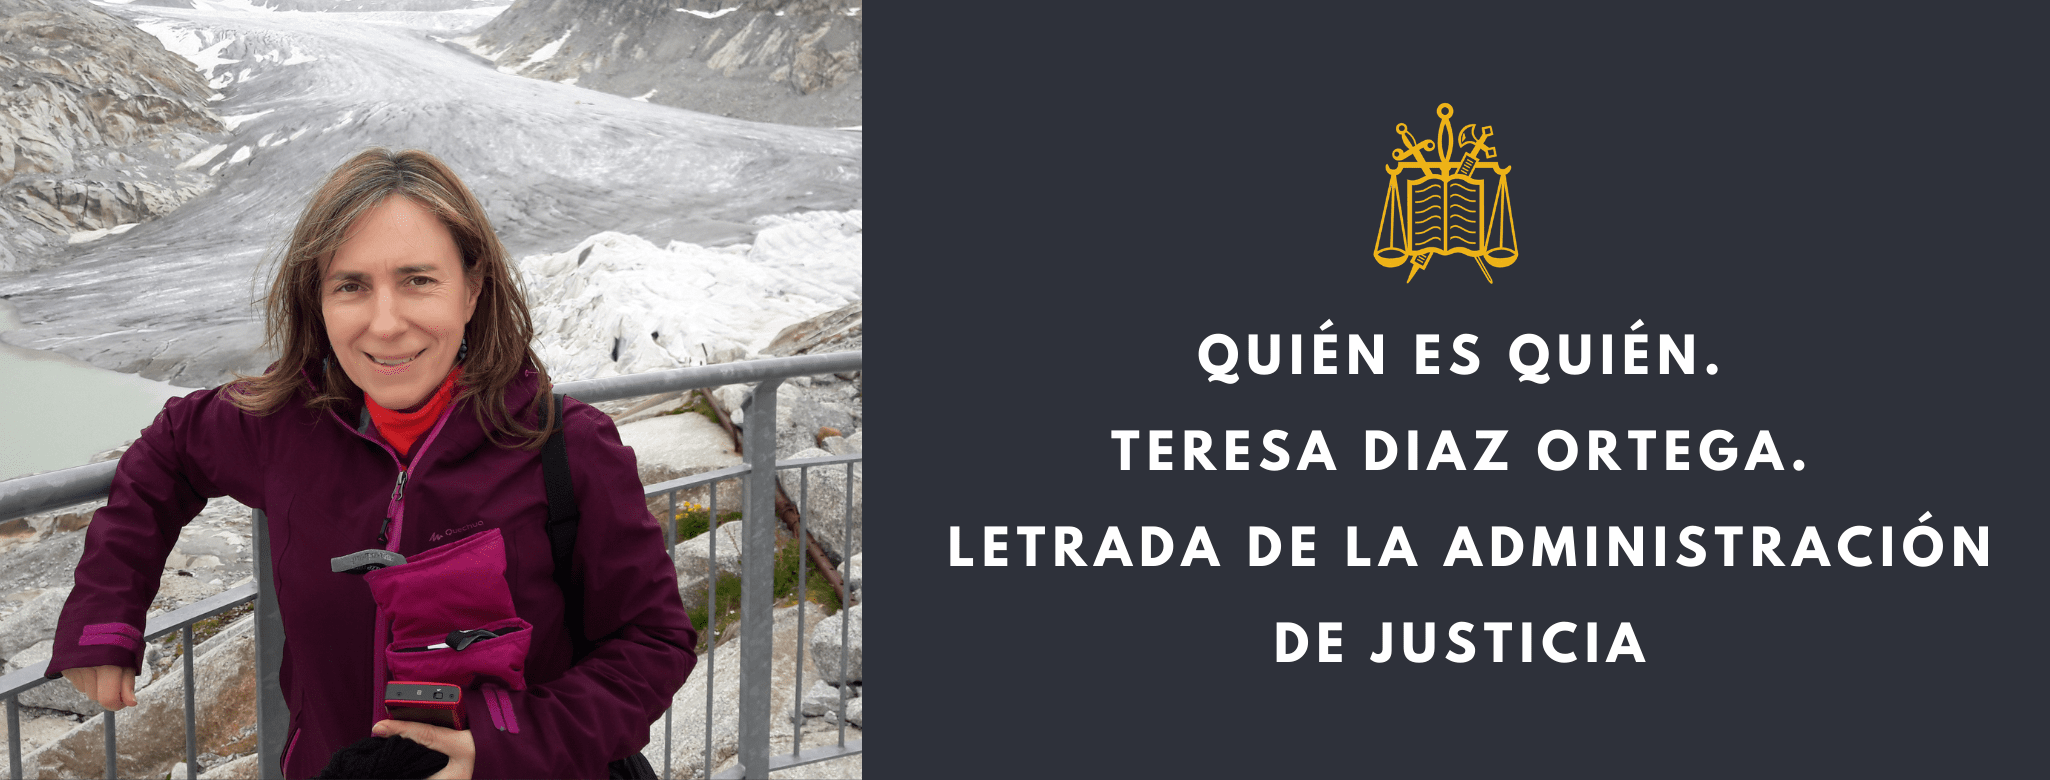 Teresa Diaz Ortega. Letrada de la Administración de Justicia